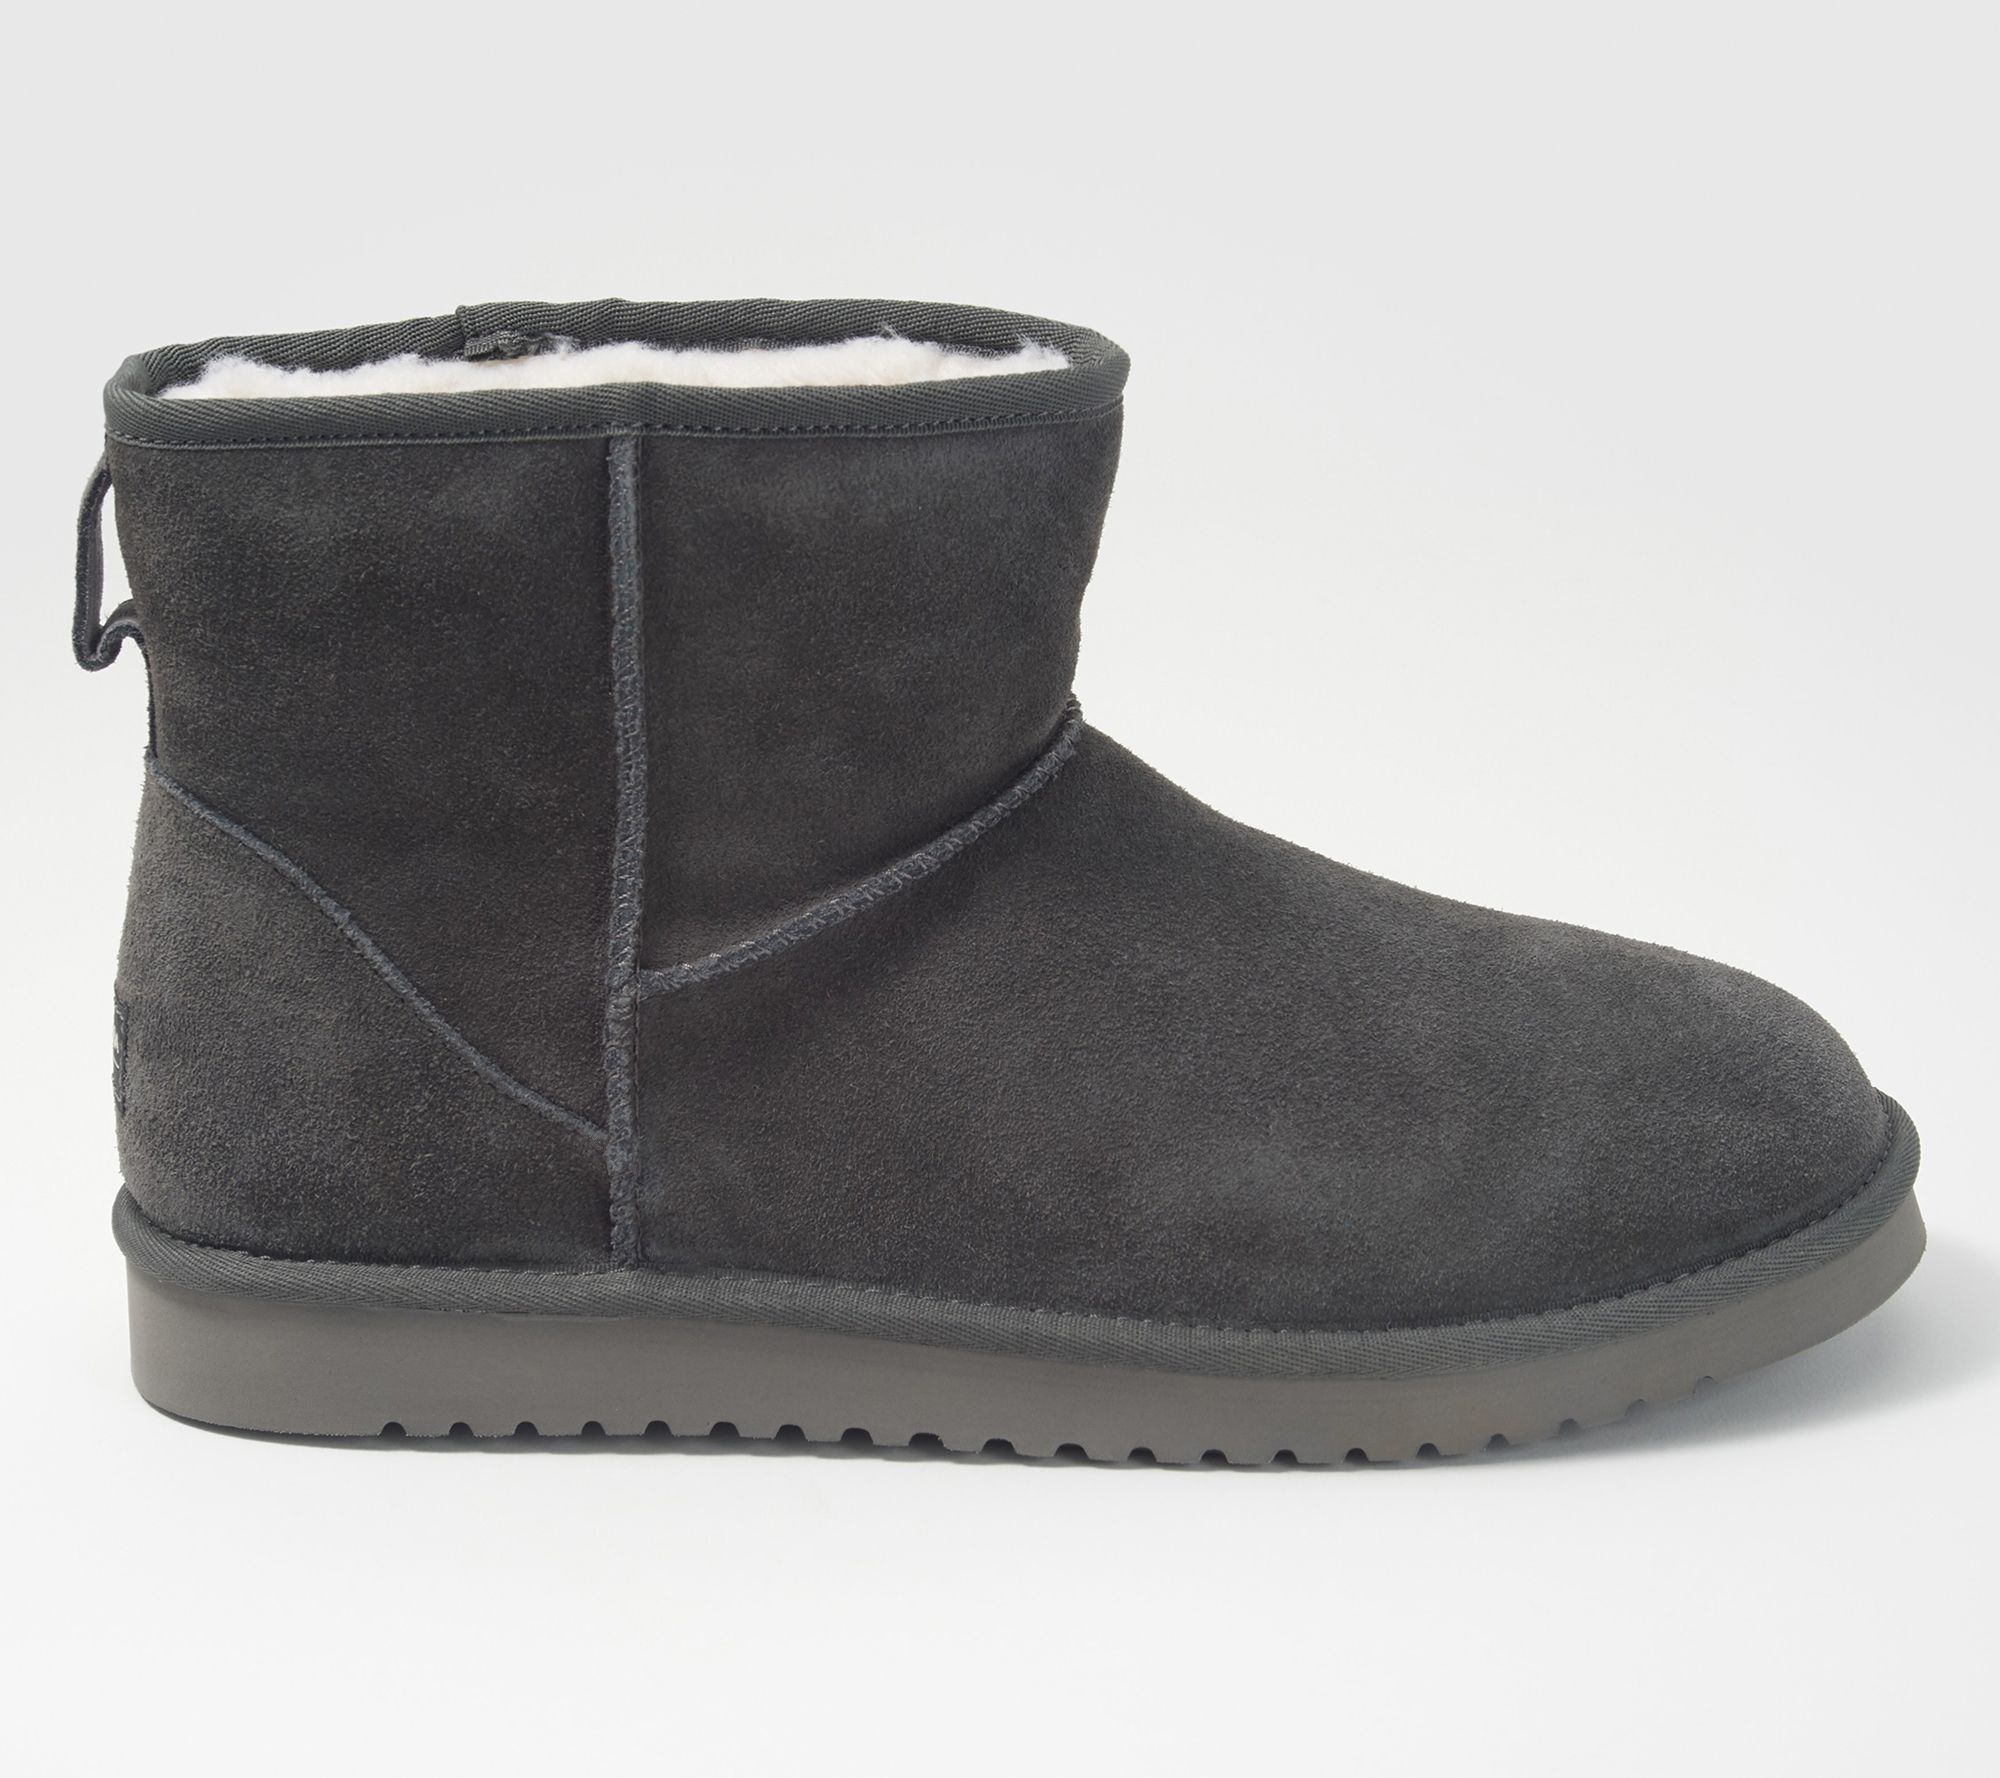 koolaburra grey boots